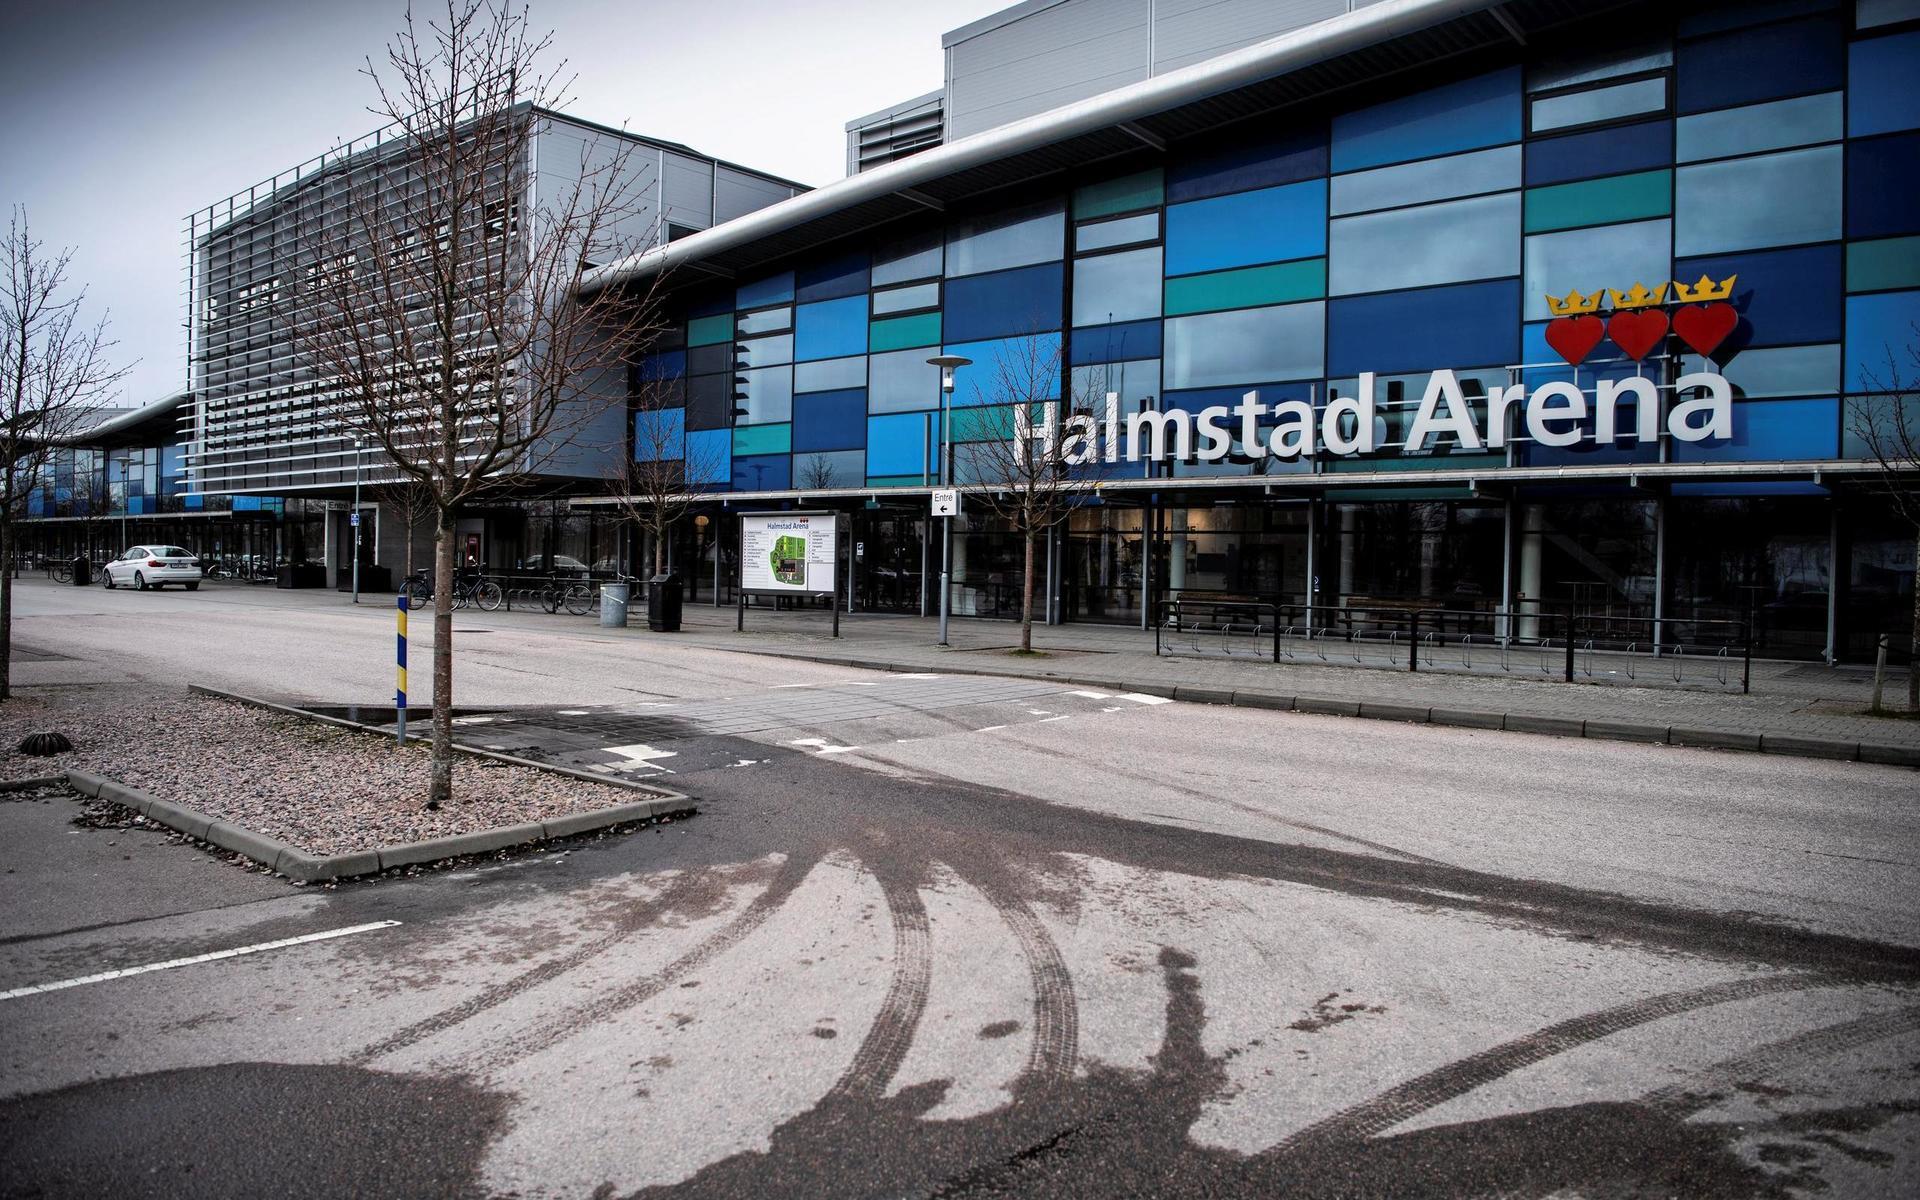 En av lokalerna som kan tänkas användas är Halmstad Arena.